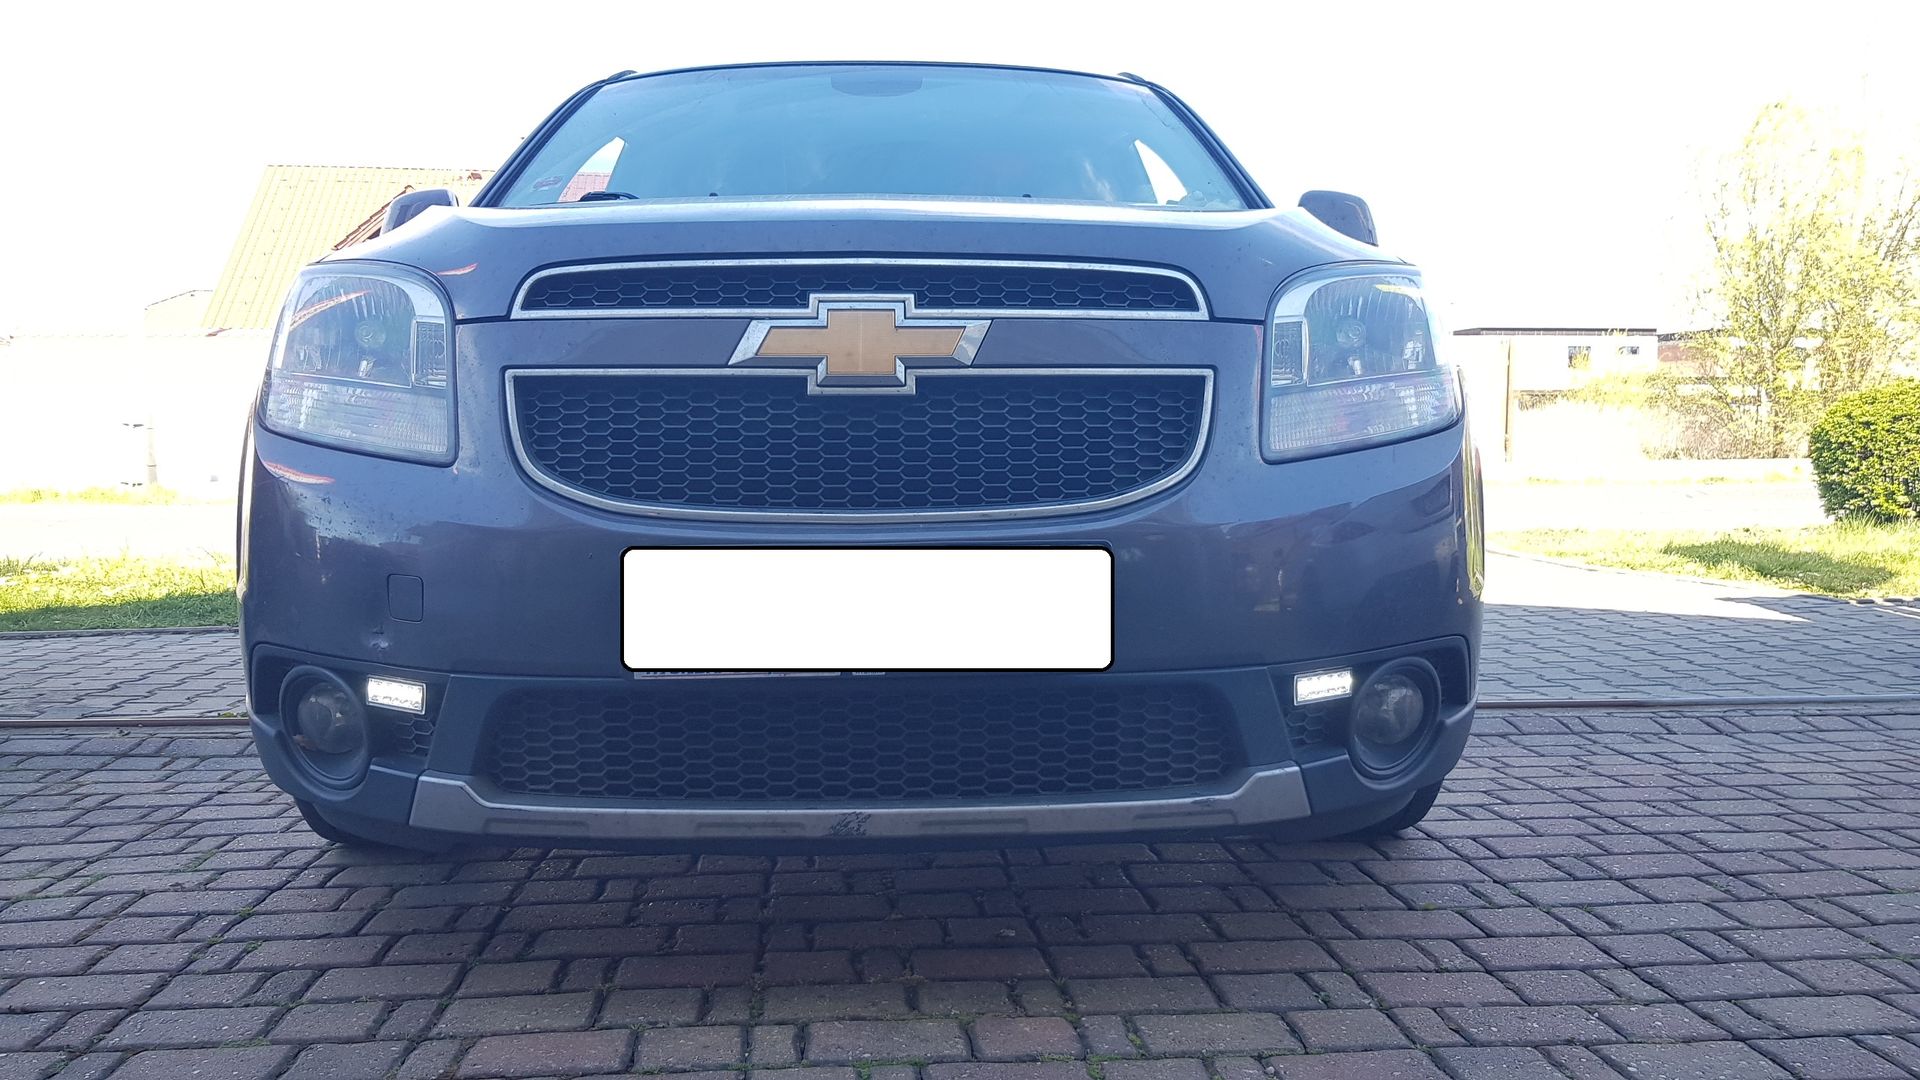 Chevrolet Orlando LED (DRL) denní svícení fatomas.cz